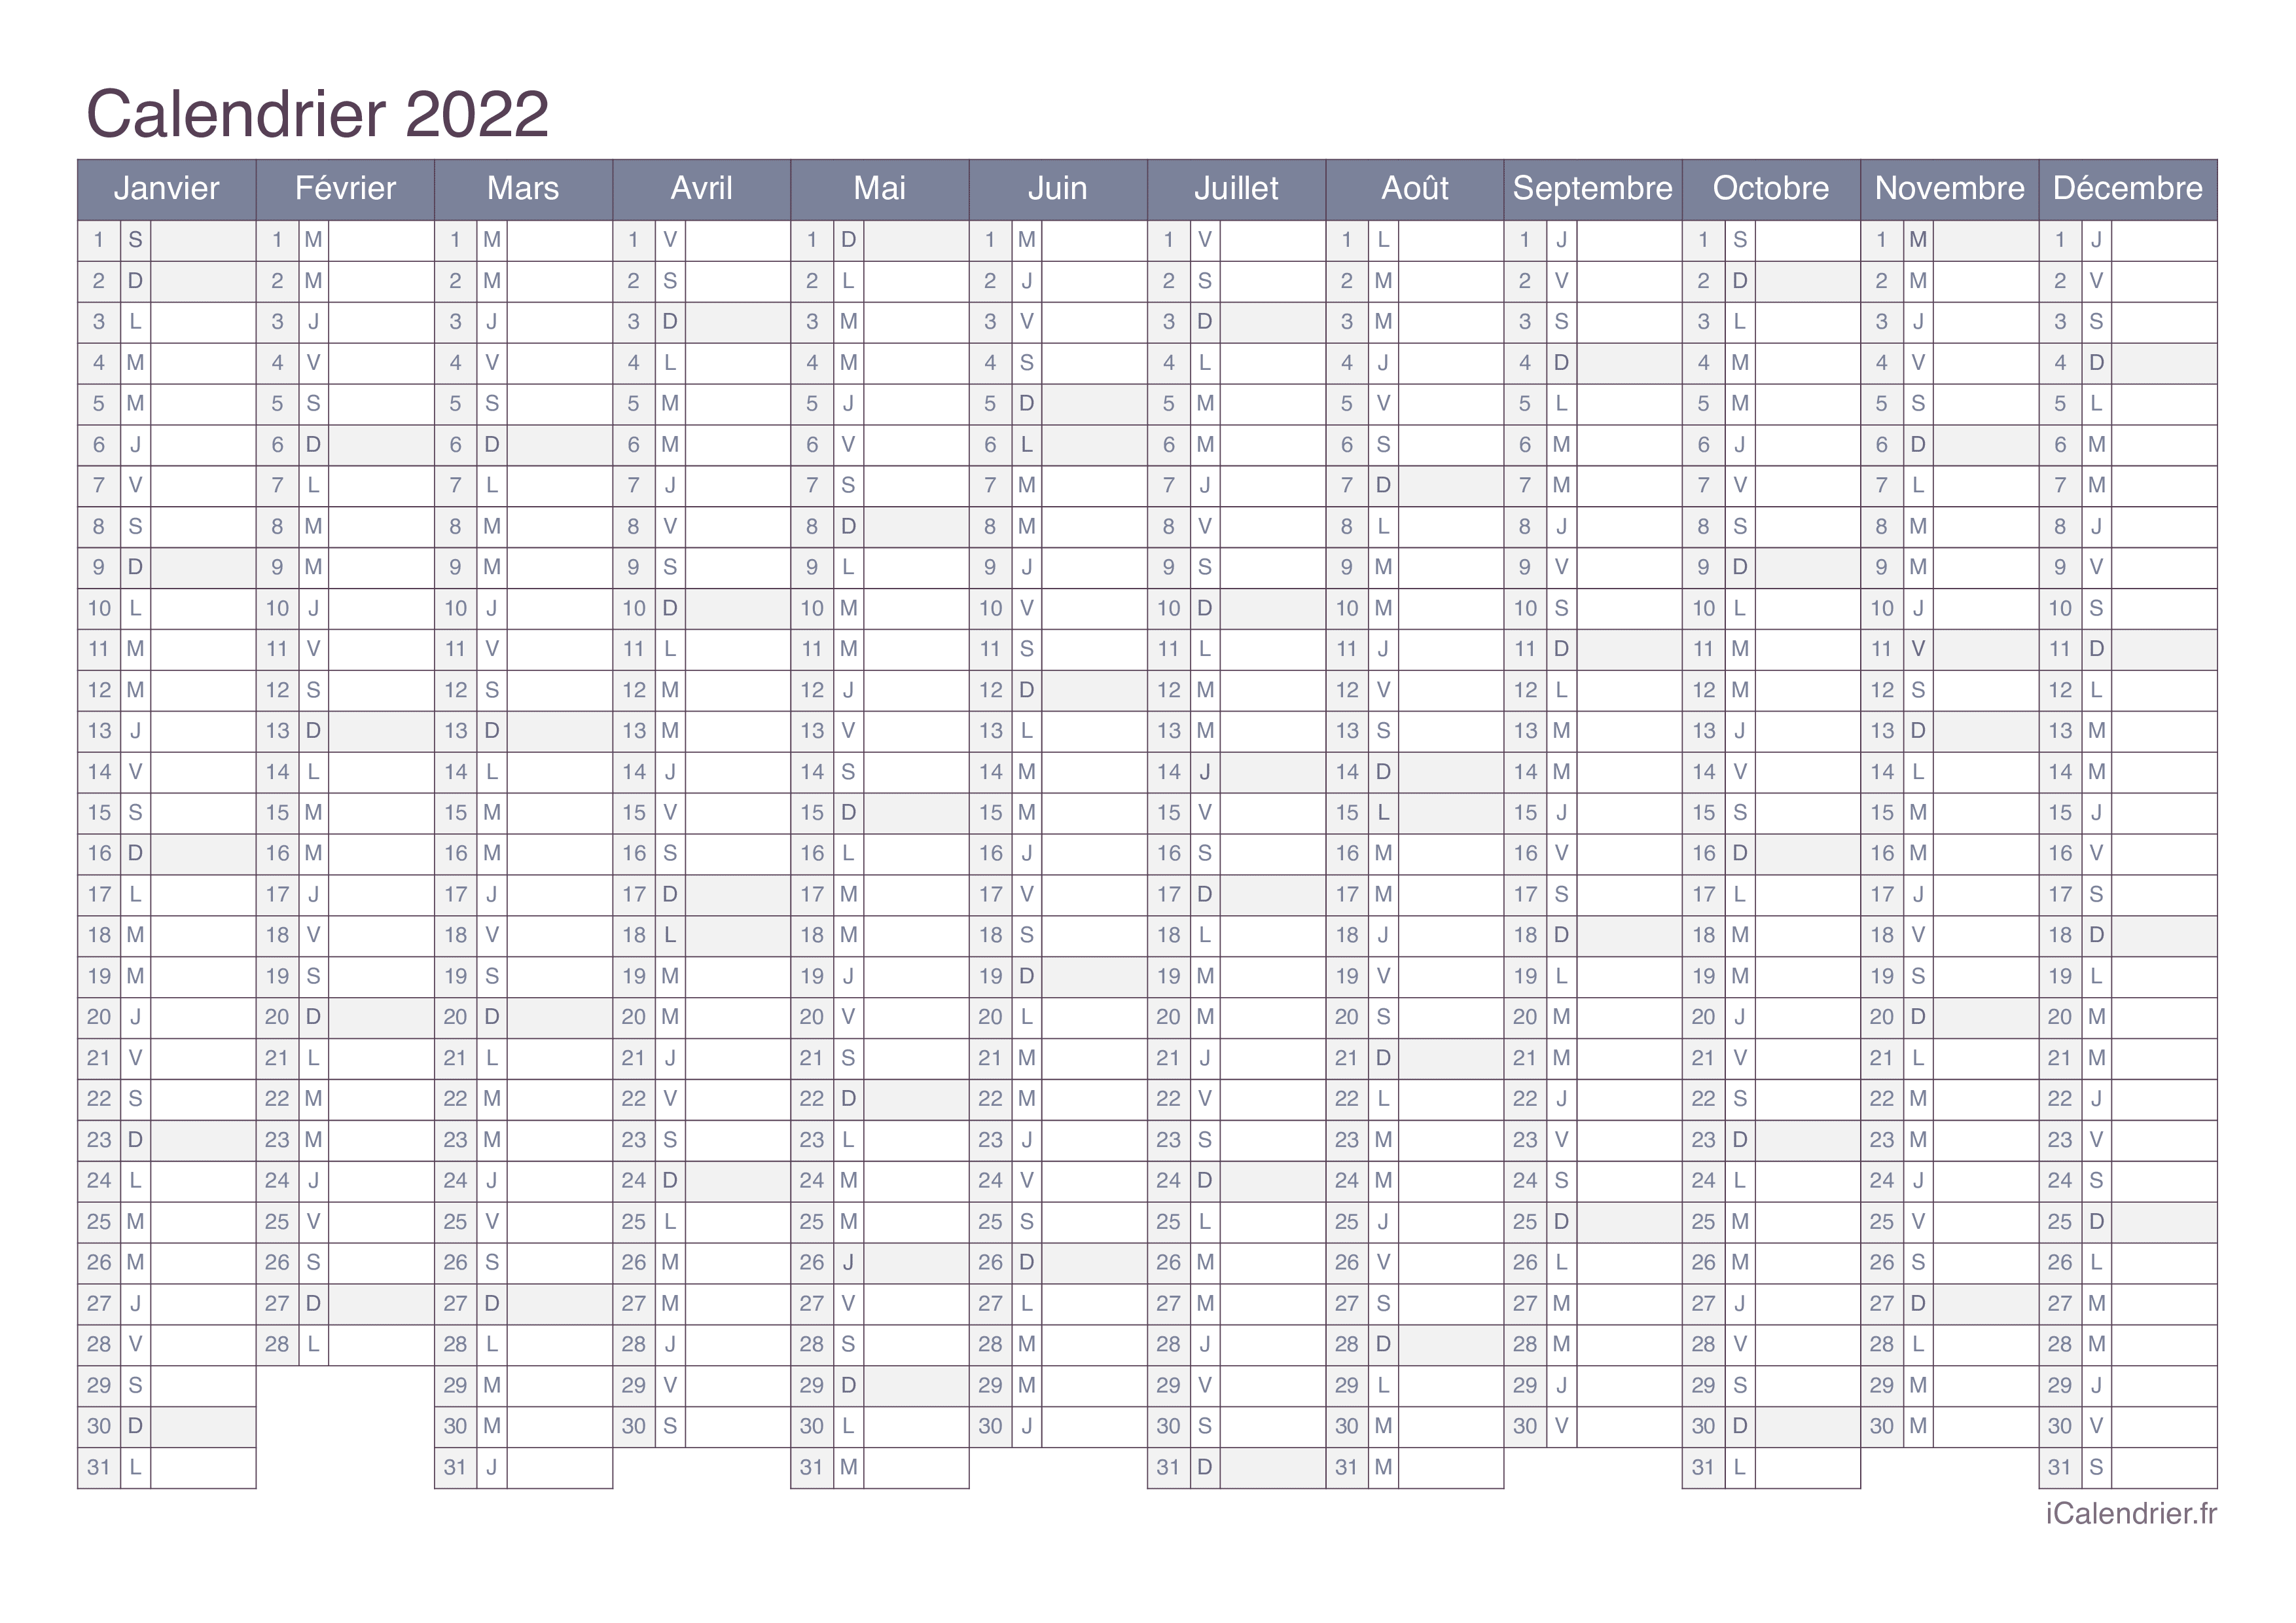 Calendrier Année 2022 à Imprimer Calendrier 2022 à imprimer PDF et Excel   iCalendrier